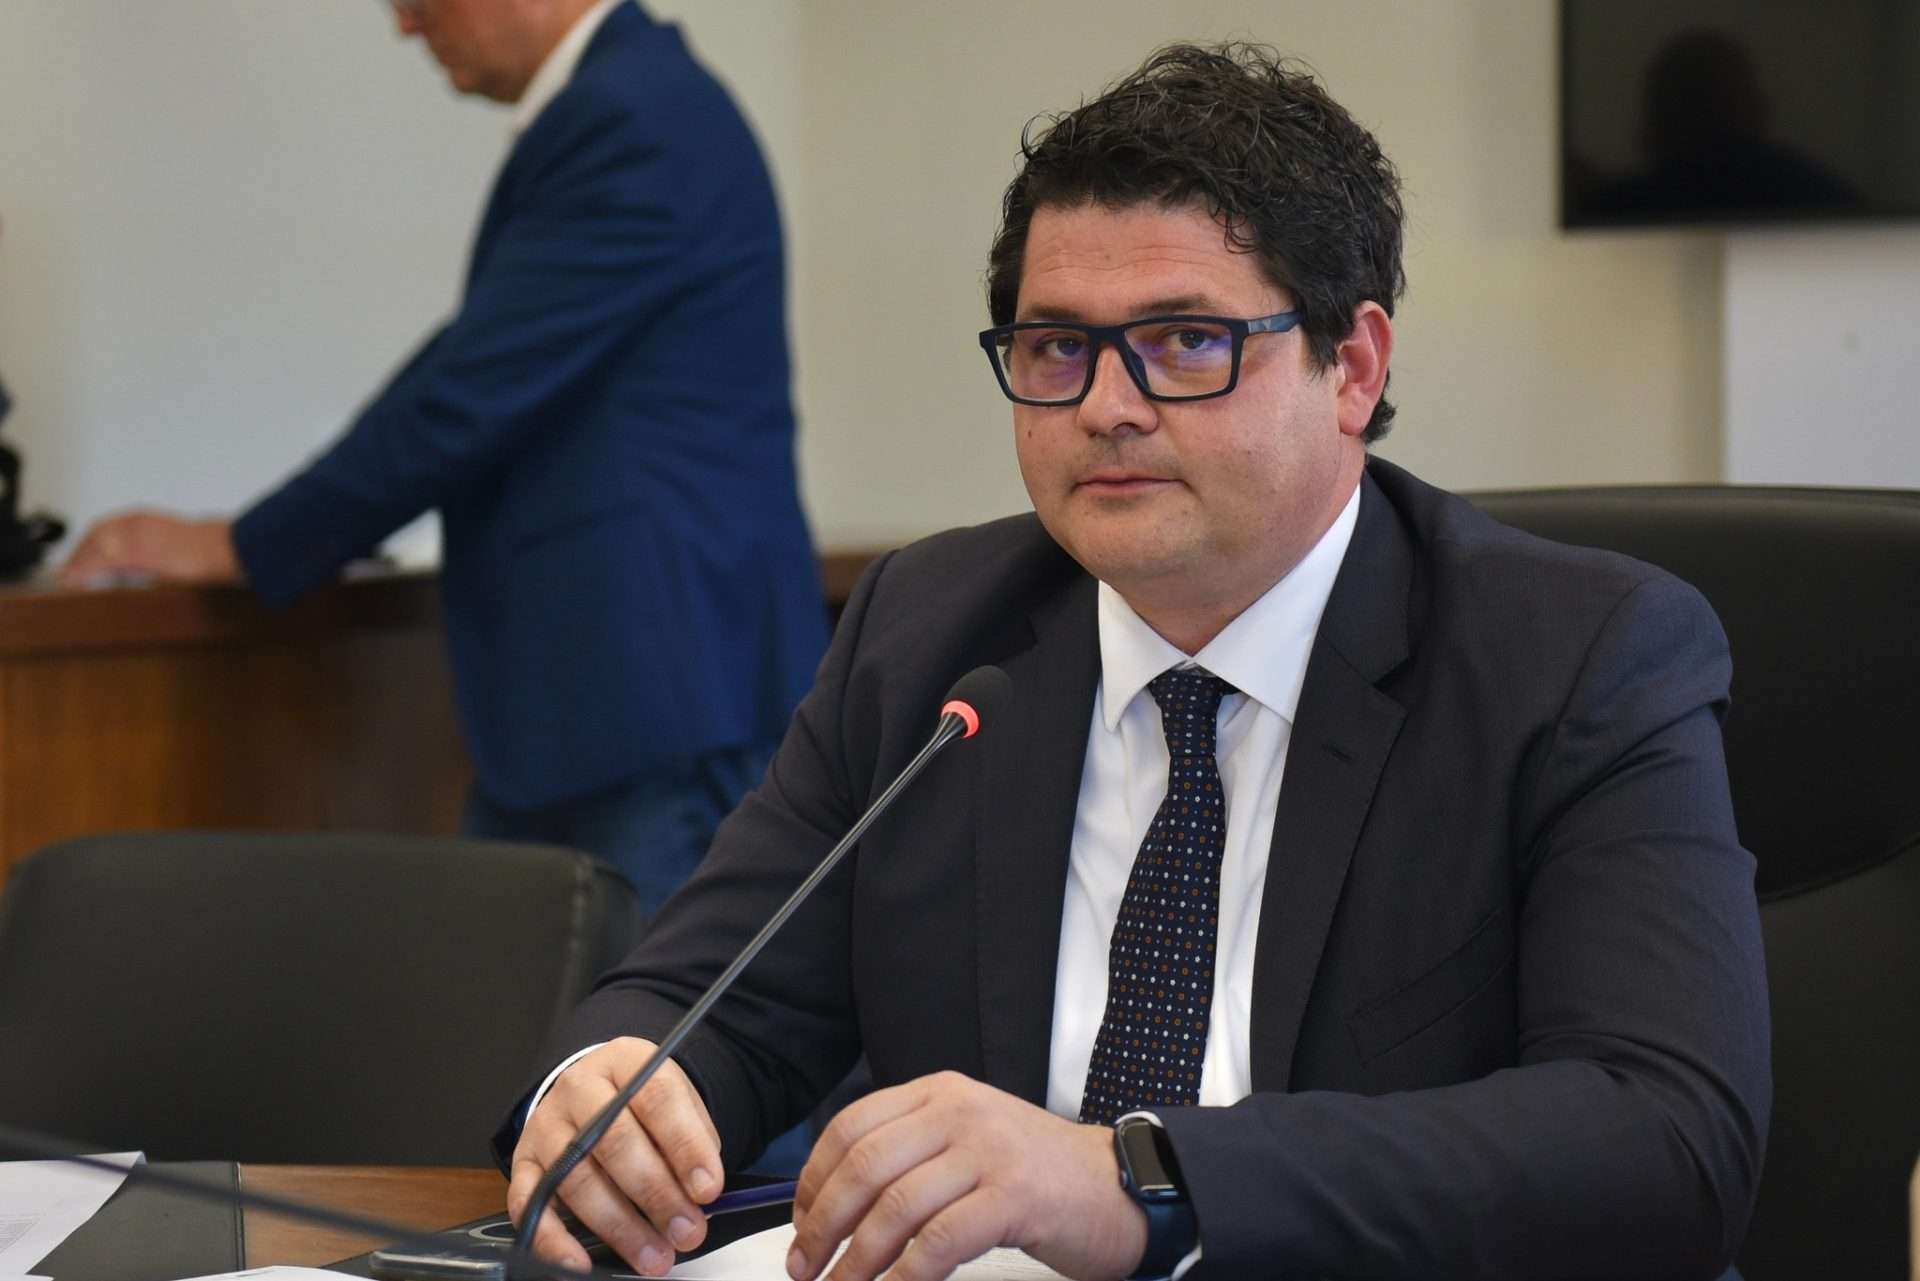 Sandro-Mariani-Presidente-Commissione-Vigilanza-scaled.jpg